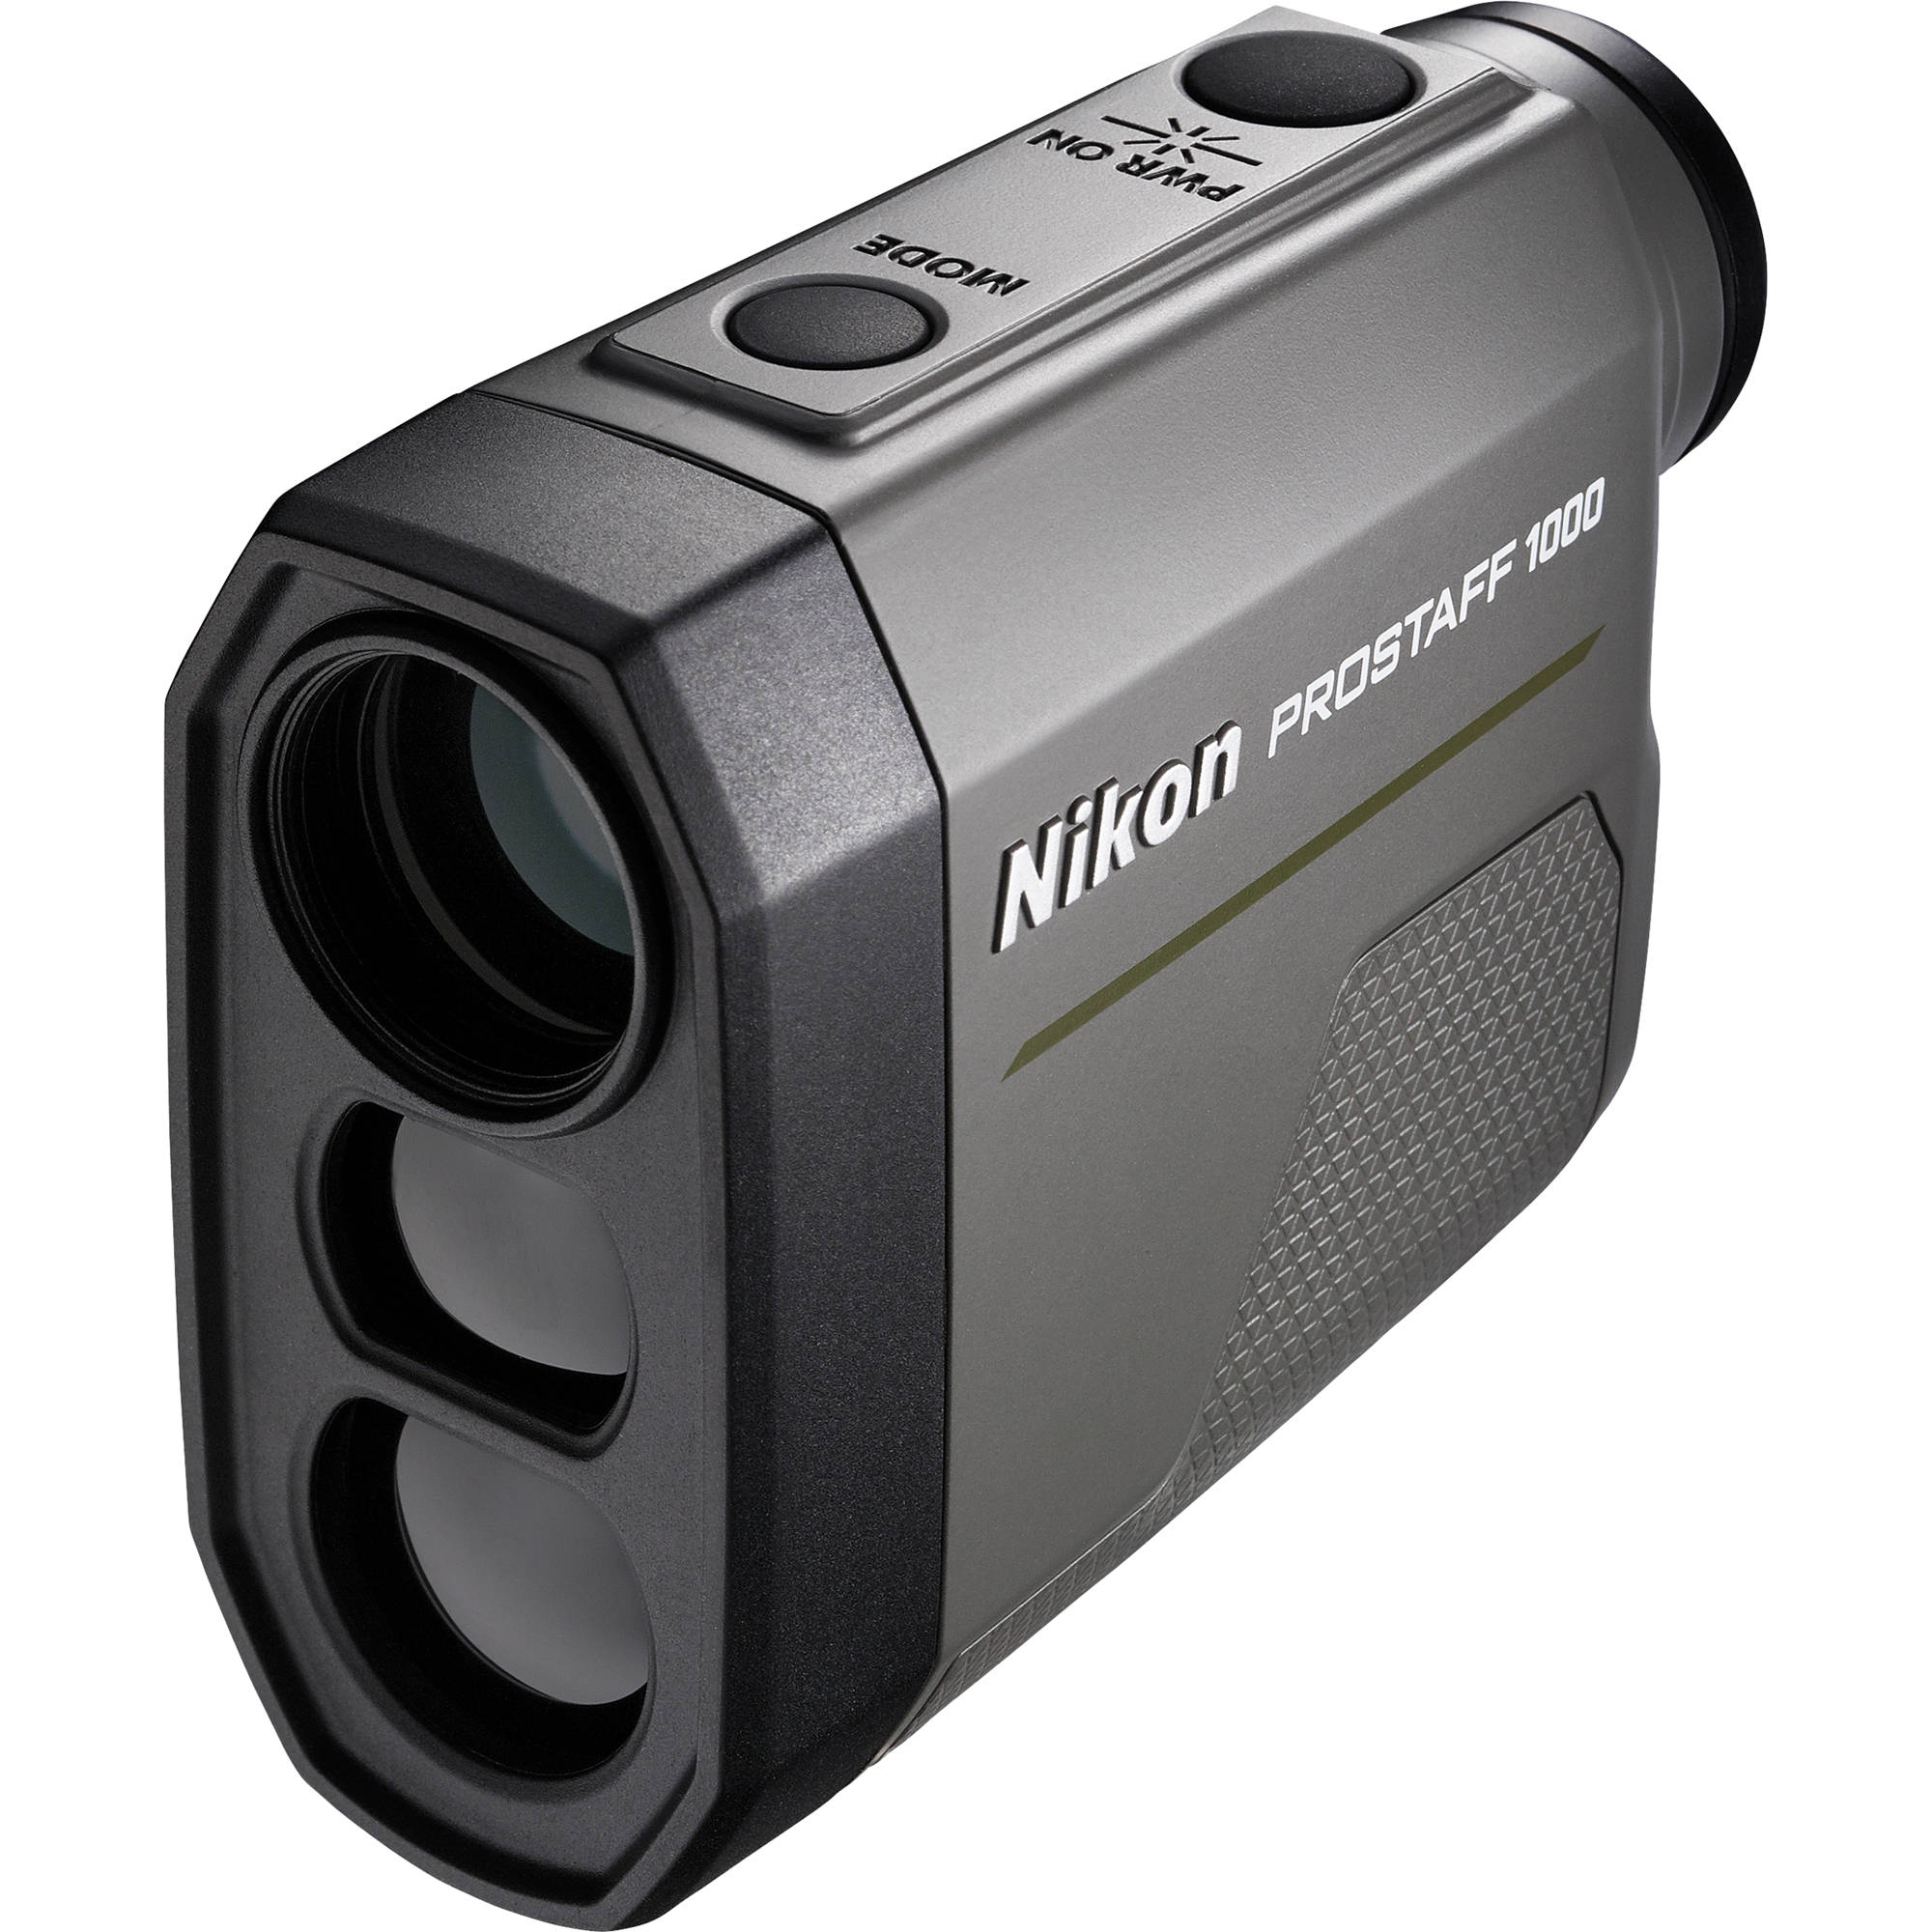 Nikon 6x Prostaff 1000 Rangefinder B H Photo Video